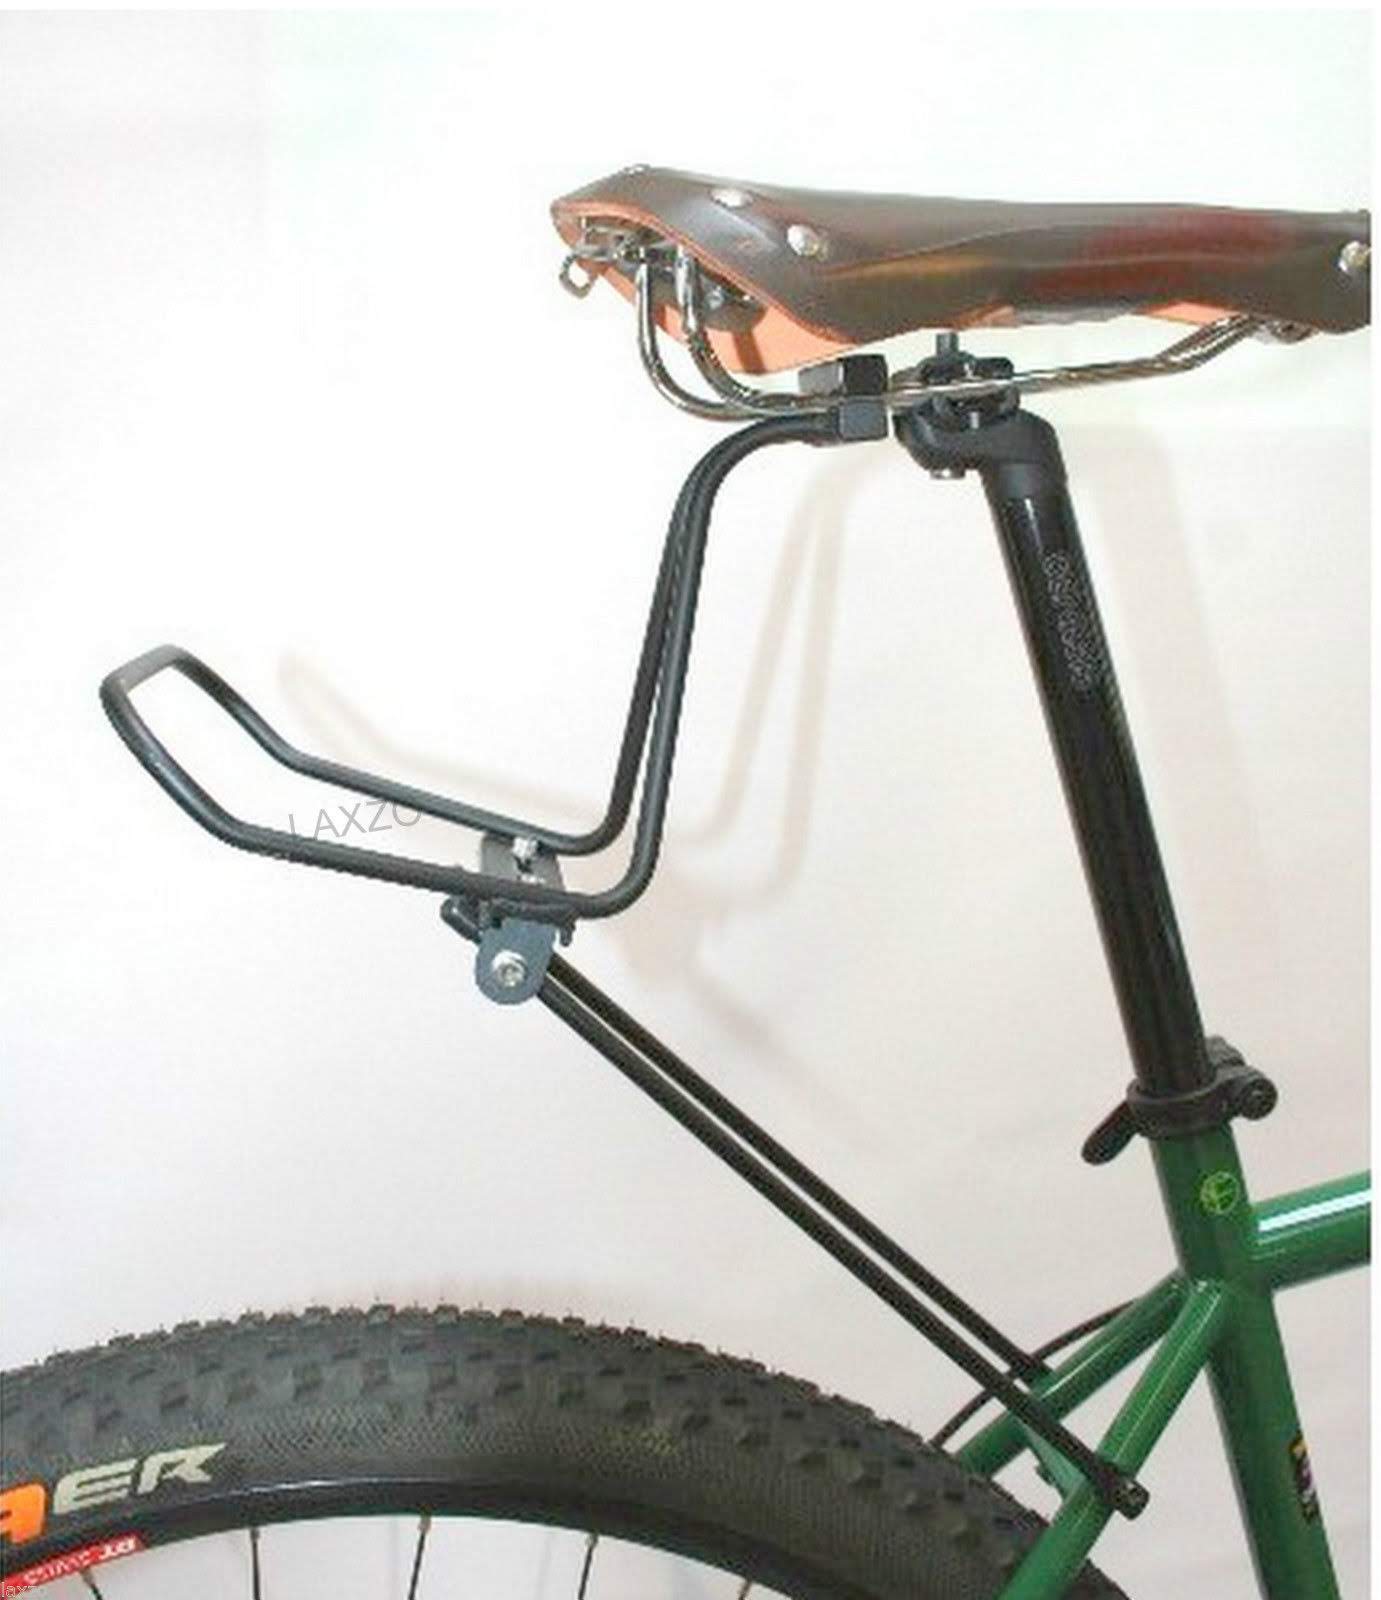 Support bike. Багажник велосипед байкпакинг. Багажник под седло велосипеда. Багажник задний подседельной трубе. Седло на багажник для электровелосипеда.